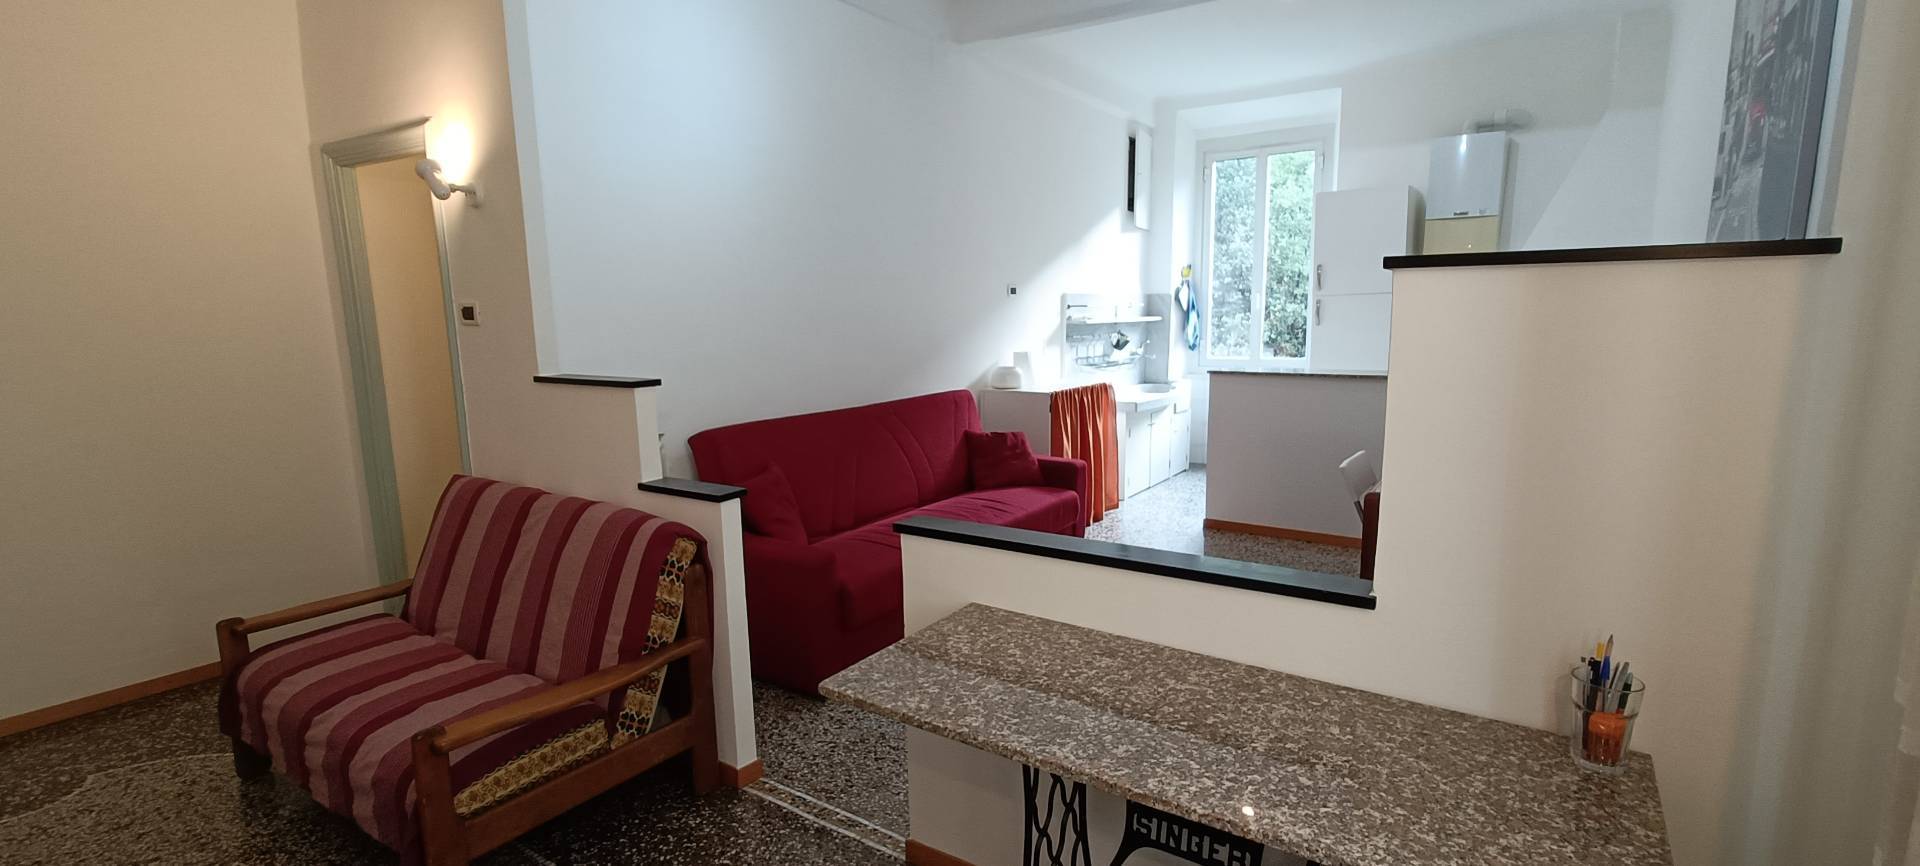 Appartamento in affitto a Genova, 6 locali, zona Località: SanFruttuoso, prezzo € 675 | PortaleAgenzieImmobiliari.it